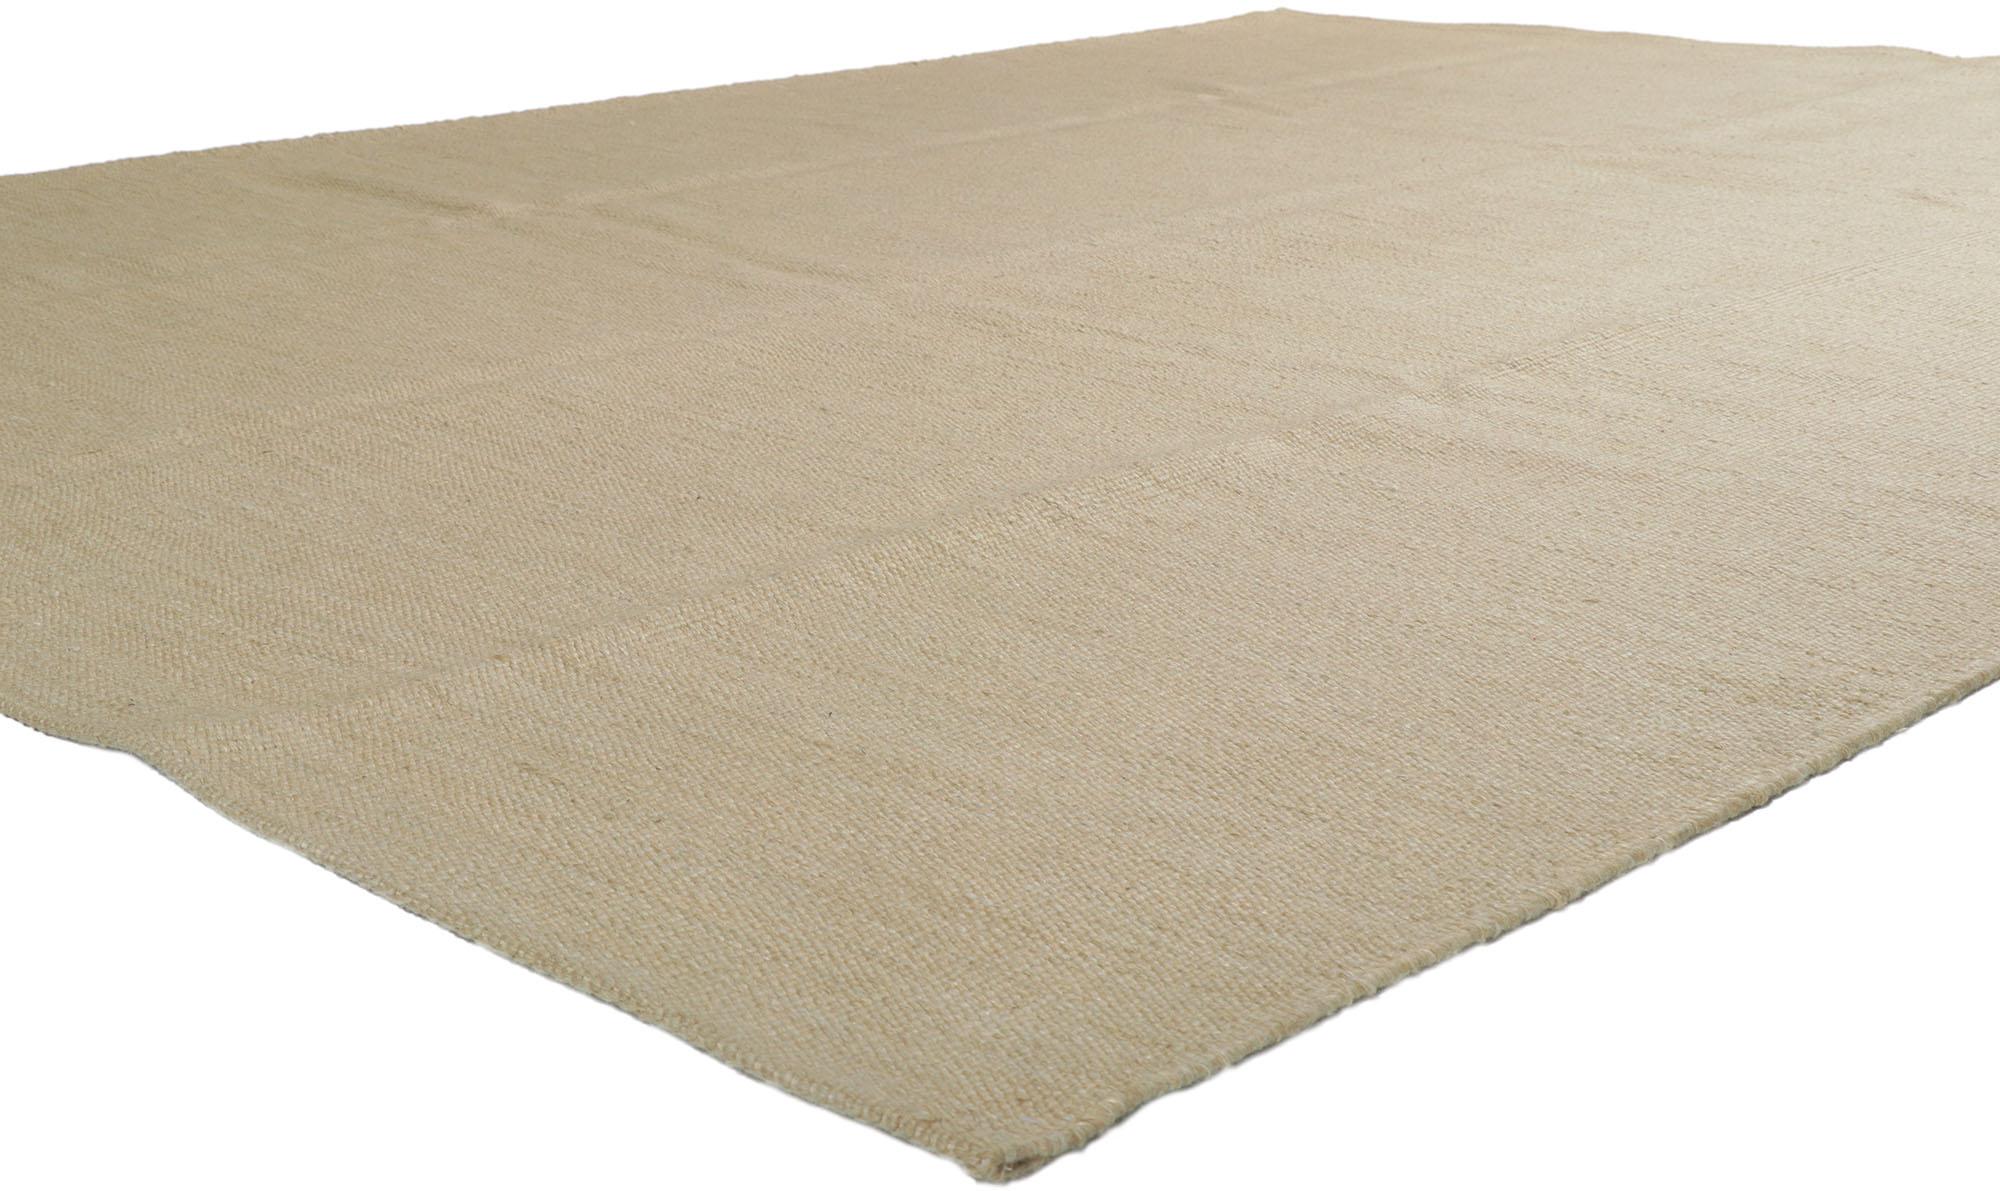 30684 Neuer schwedisch inspirierter Kilim-Teppich mit minimalistischem, skandinavisch modernem Stil 09'04 x 12'00. Mit seinem geometrischen Design und der minimalistischen Hygge-Atmosphäre verkörpert dieser handgewebte schwedische Kilim-Teppich aus